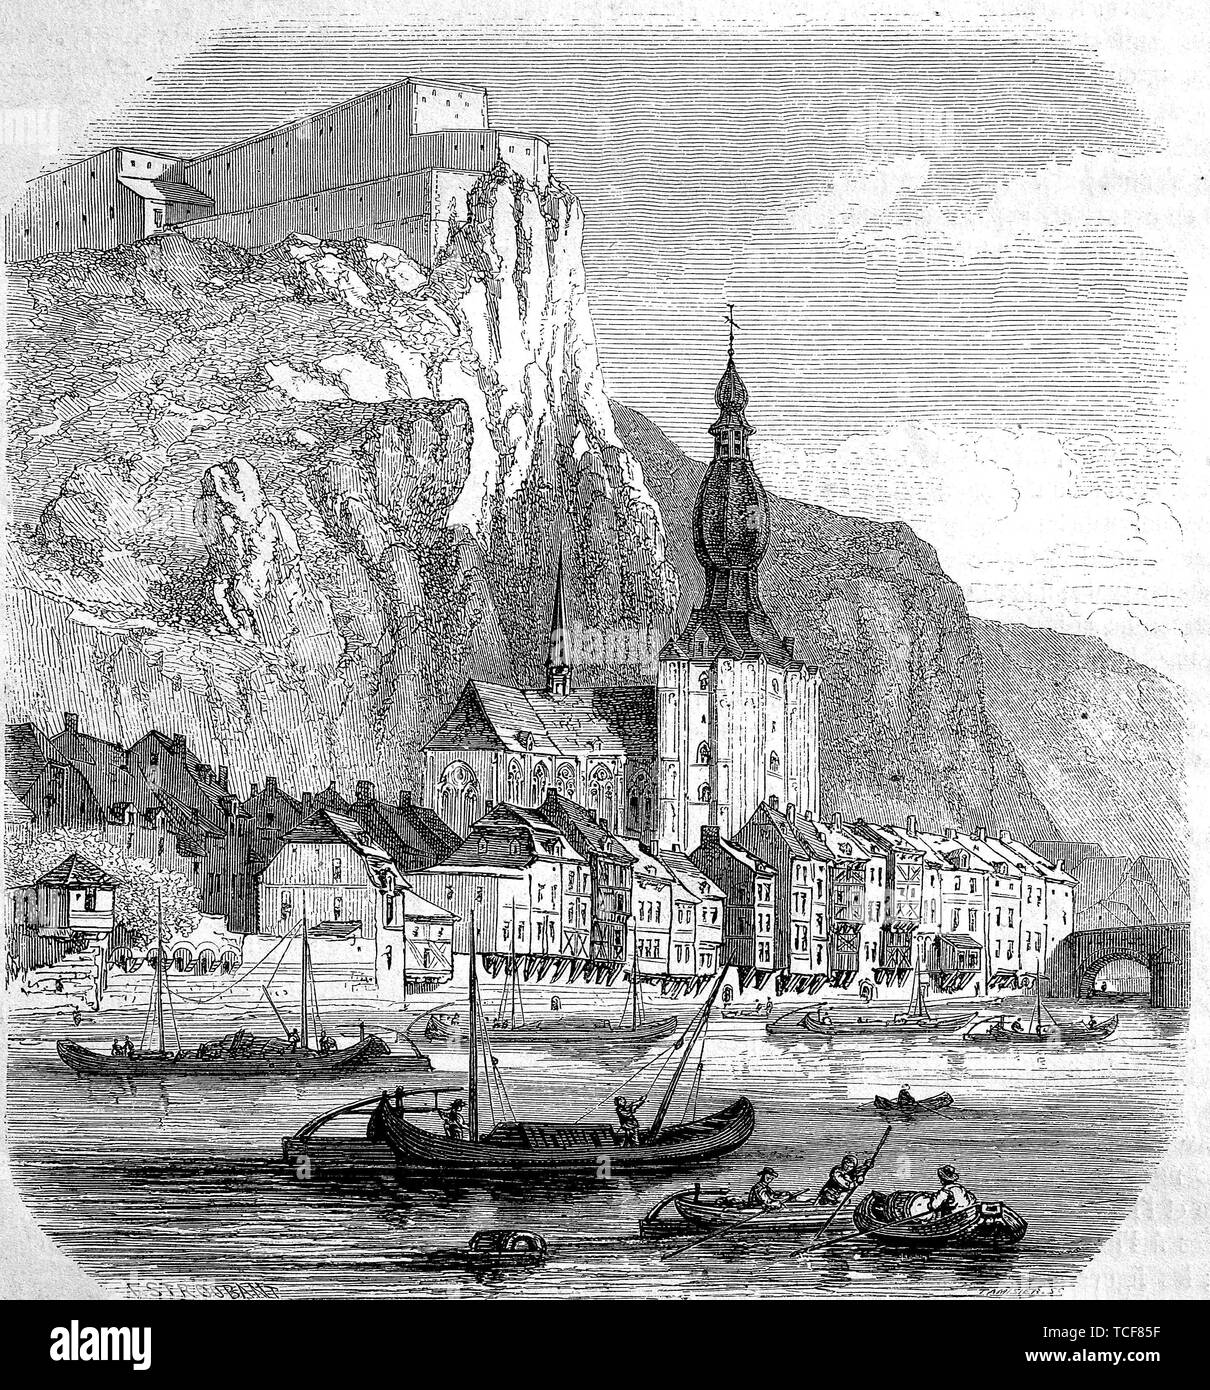 Dinant, einem wallonischen Stadt und Gemeinde auf der Maas gelegen, in der belgischen Provinz Namur, 1860, historische Holzschnitt, Belgien, Europa Stockfoto